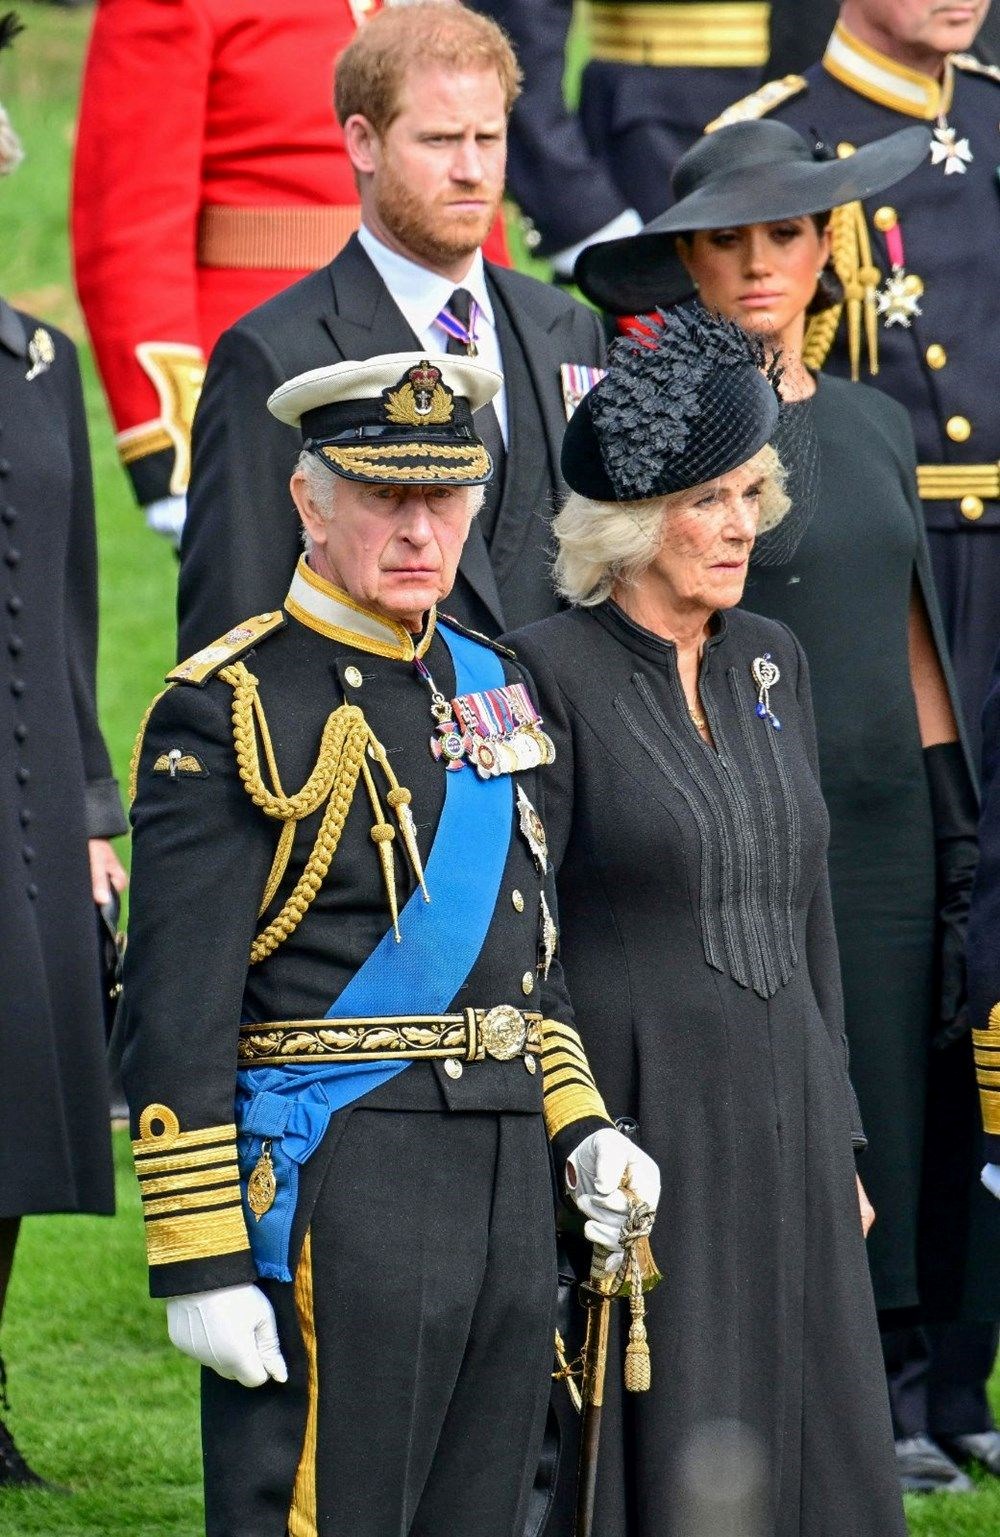 Kral Charles taç giyme töreninde geleneği bozacak - 2